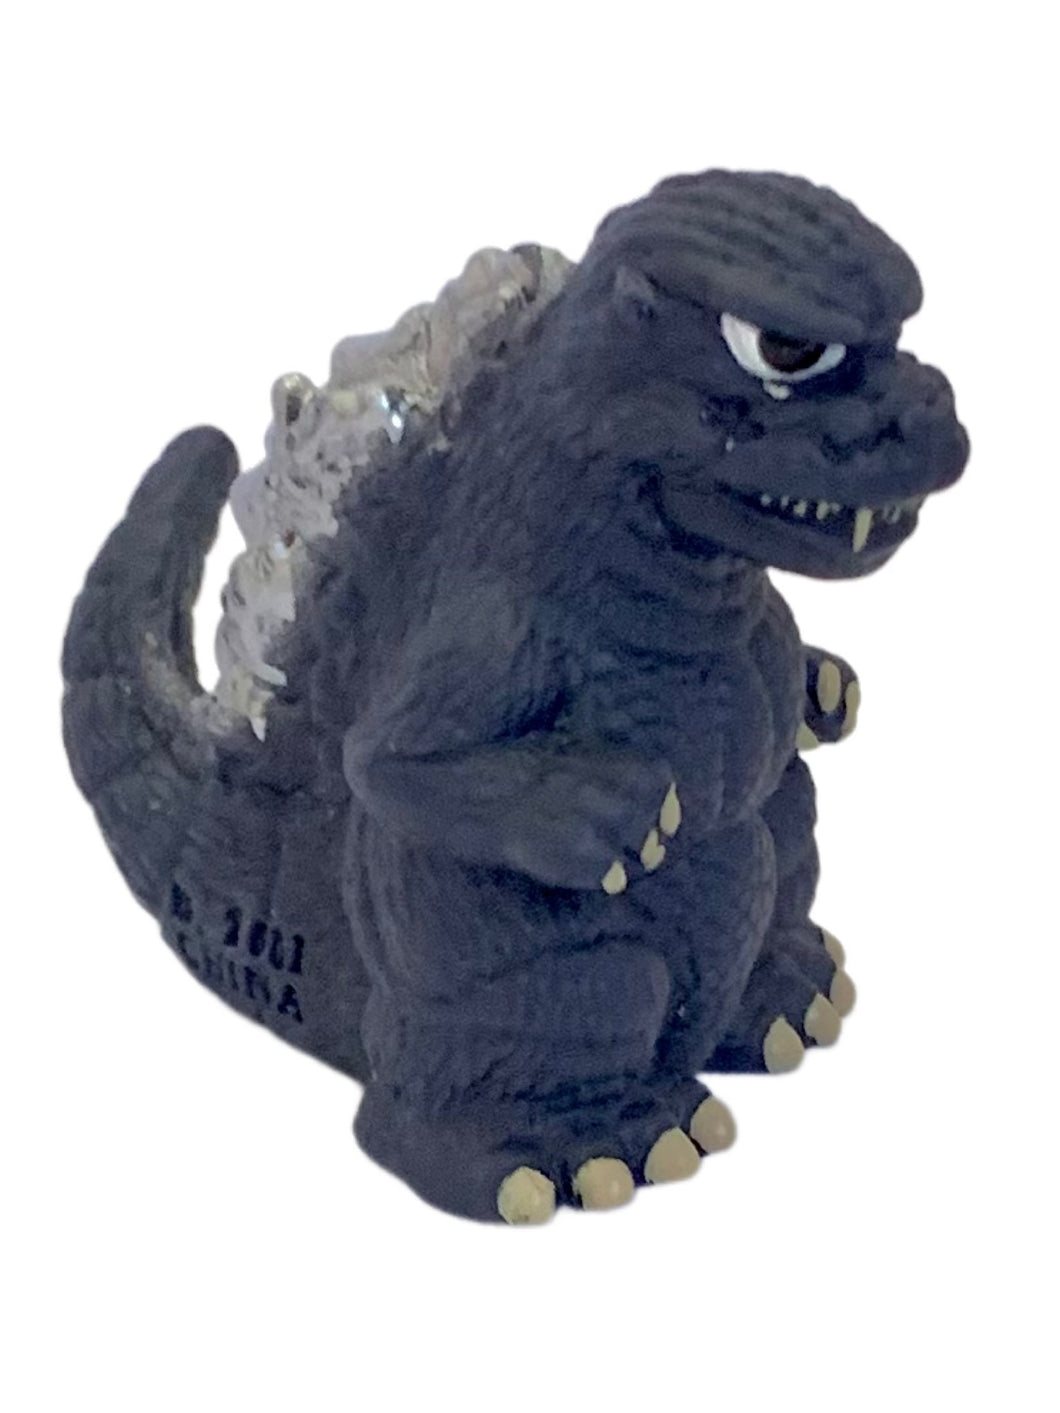 Gojira - Godzilla '84 - Godzilla All-Out Attack - Trading Figure - No. 13